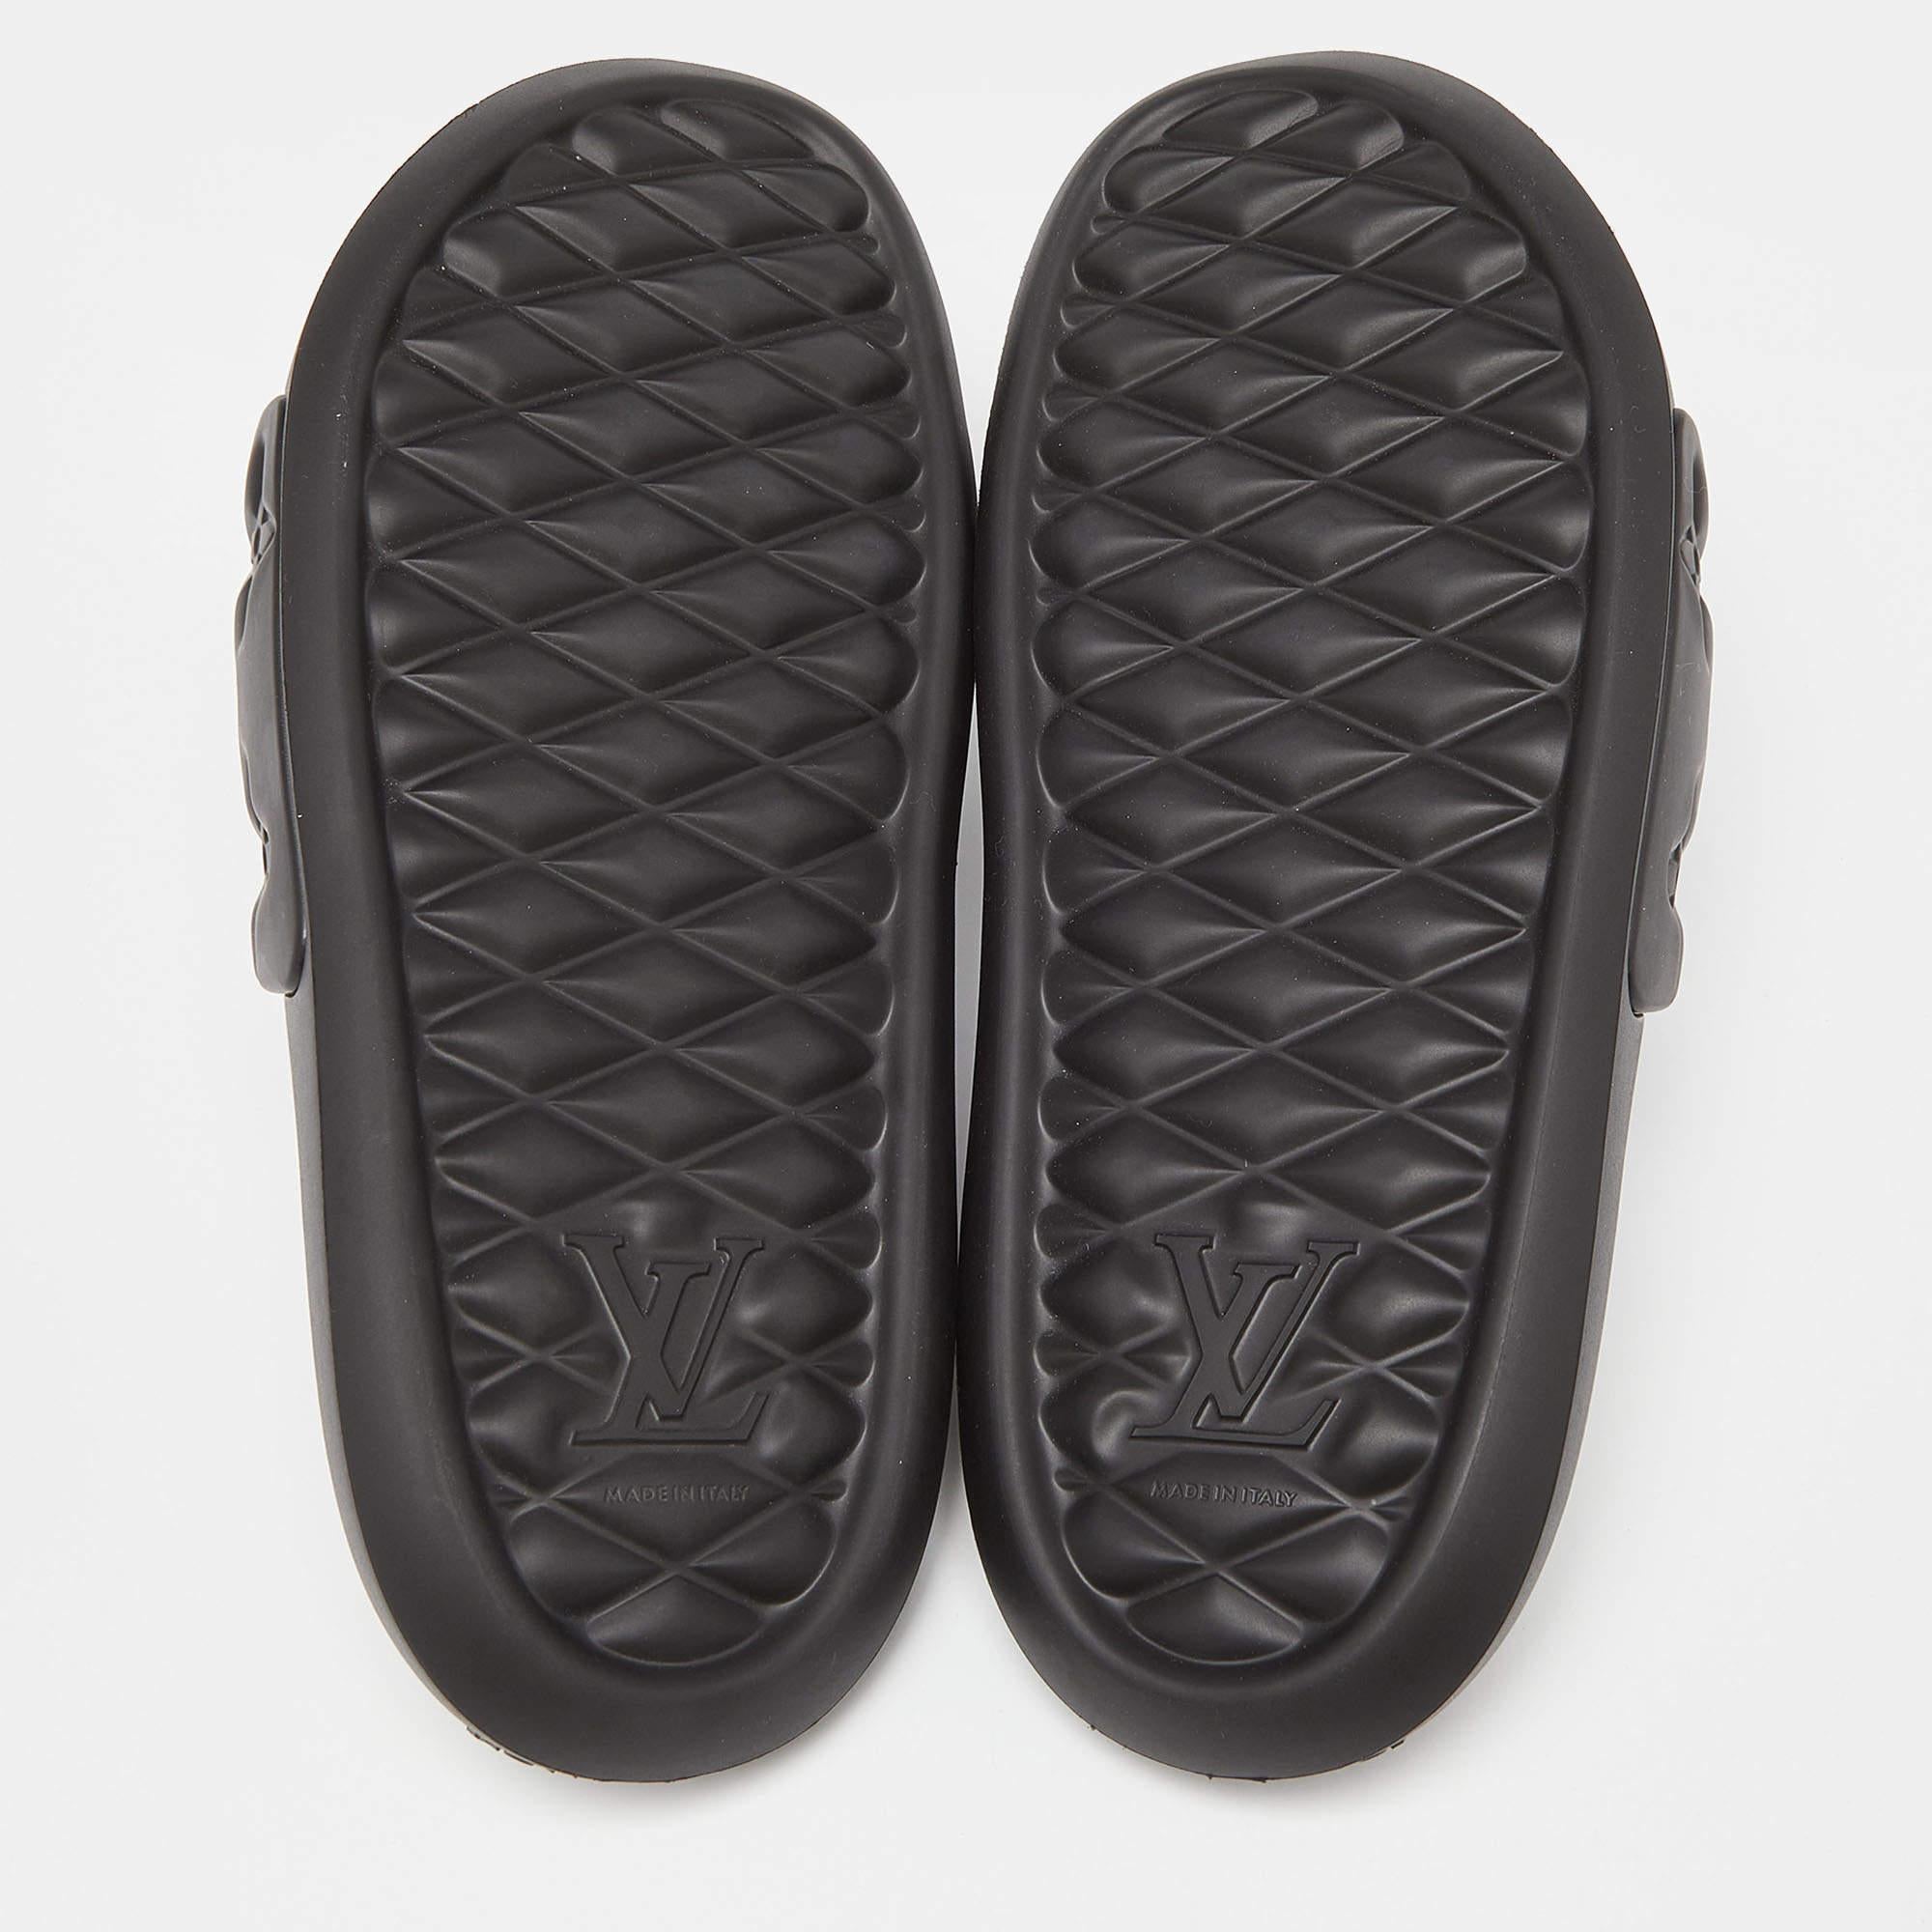 Men's Louis Vuitton Black Monogram Rubber Waterfront Mule Sandals Size 42